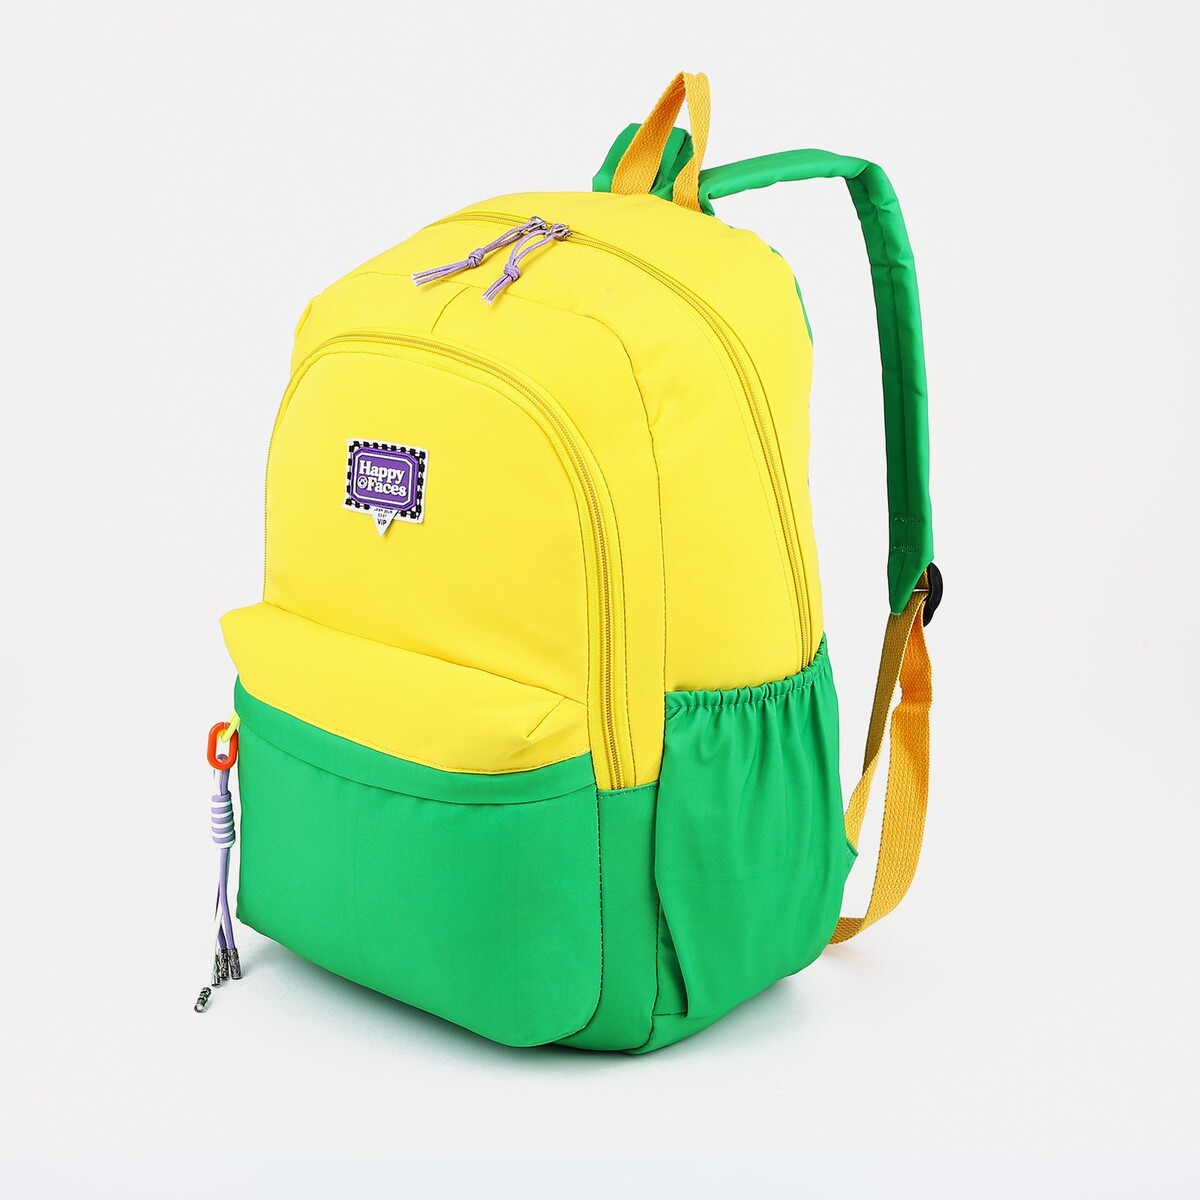 Рюкзак 2 отдела на молнии, 4 наружных кармана, цвет желтый/зеленый рюкзак сумка на молнии 4 наружных кармана отделение для обуви зеленый